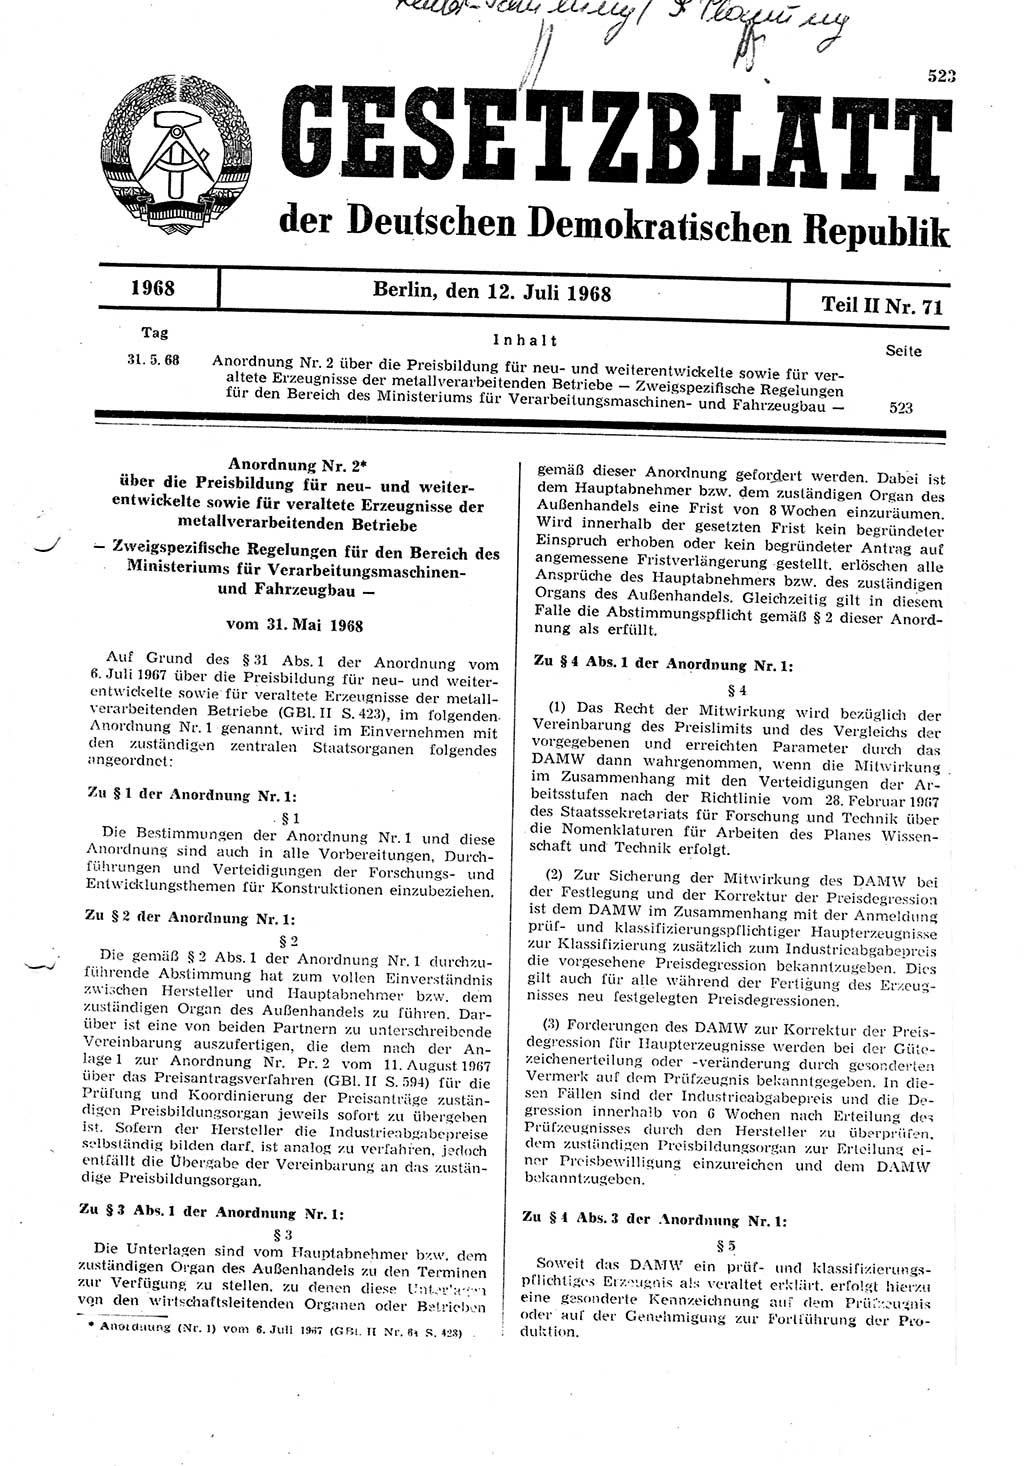 Gesetzblatt (GBl.) der Deutschen Demokratischen Republik (DDR) Teil ⅠⅠ 1968, Seite 523 (GBl. DDR ⅠⅠ 1968, S. 523)